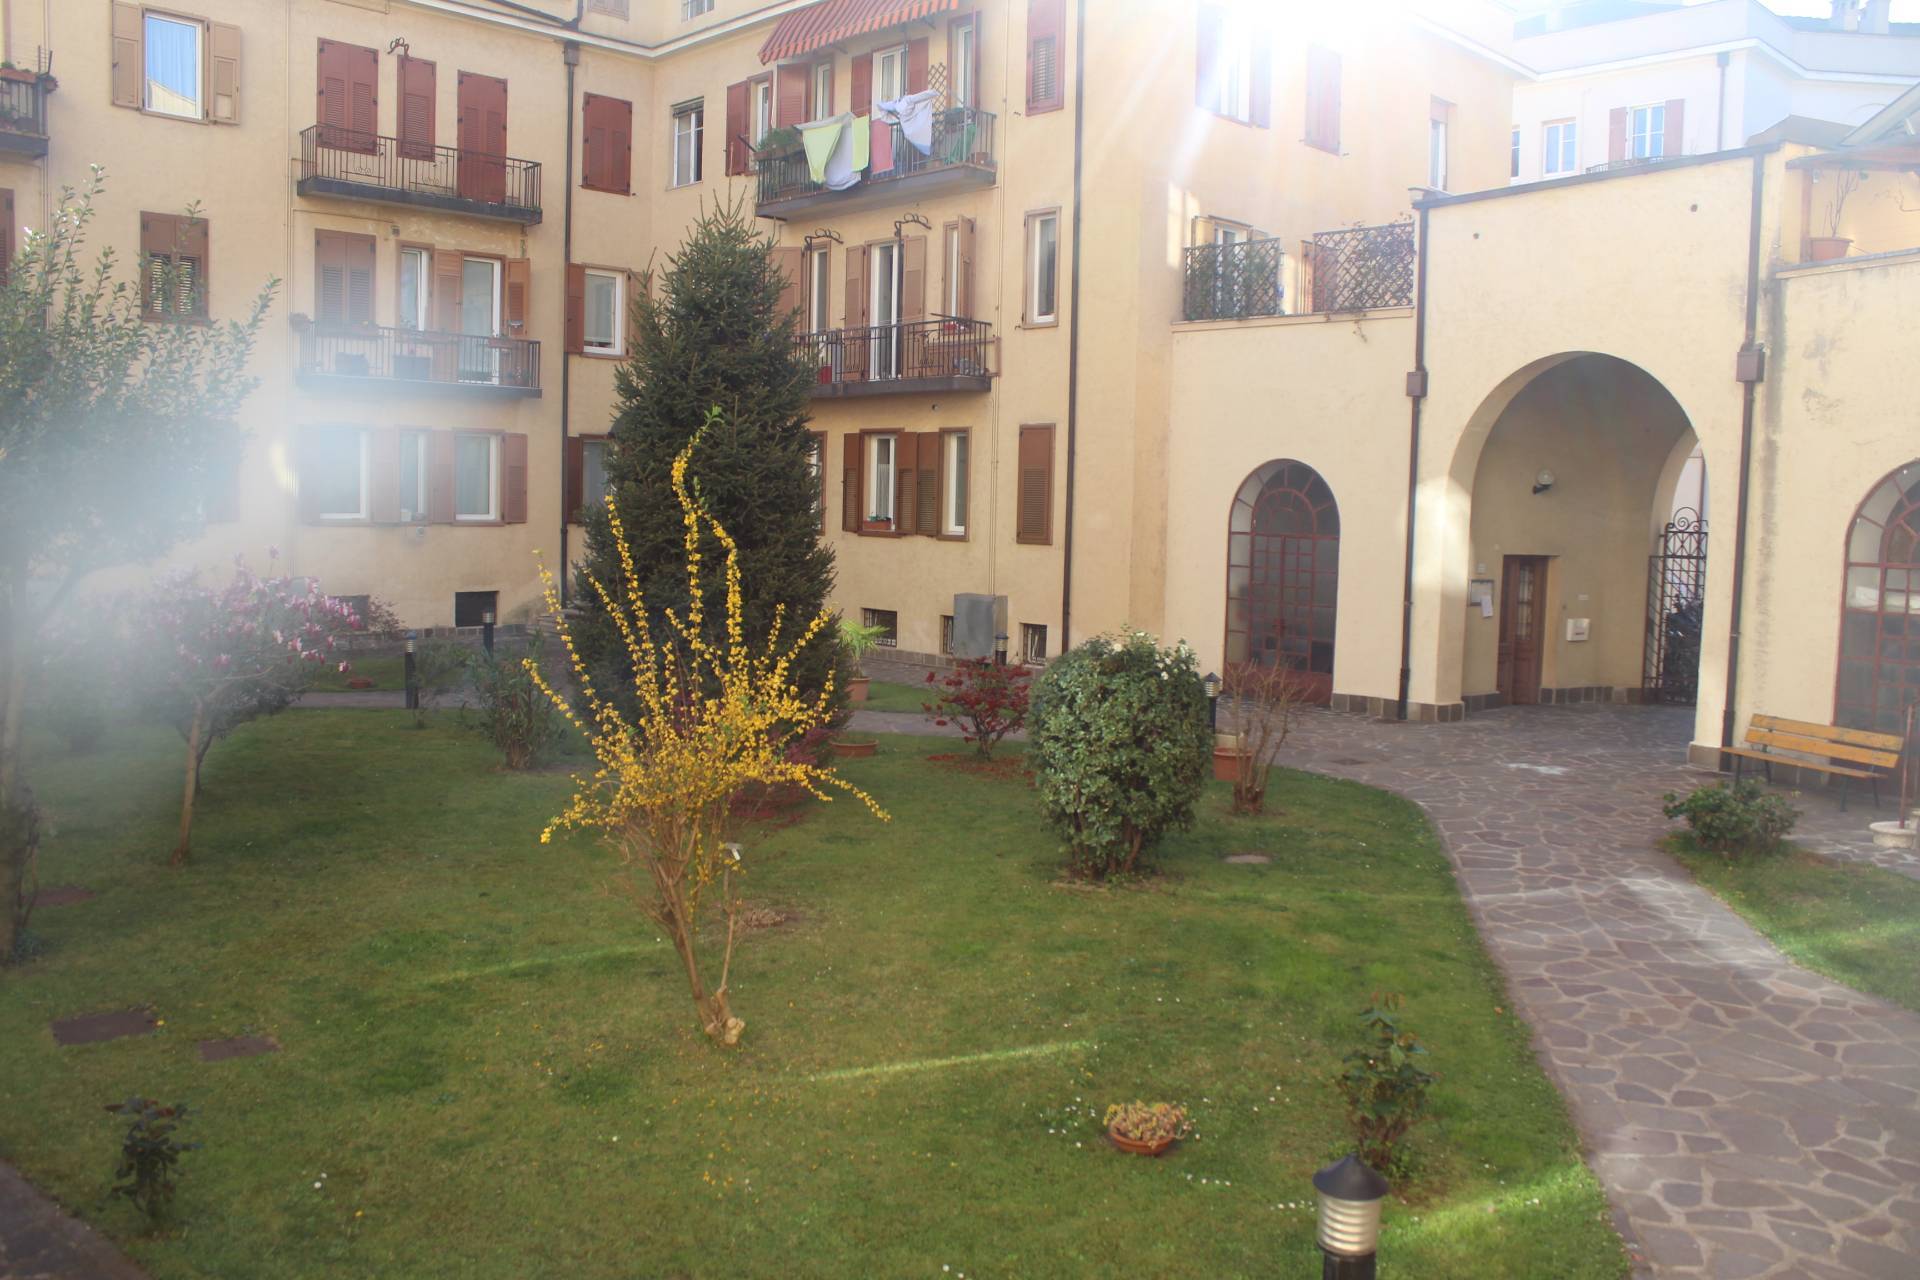 Appartamento in vendita Bolzano